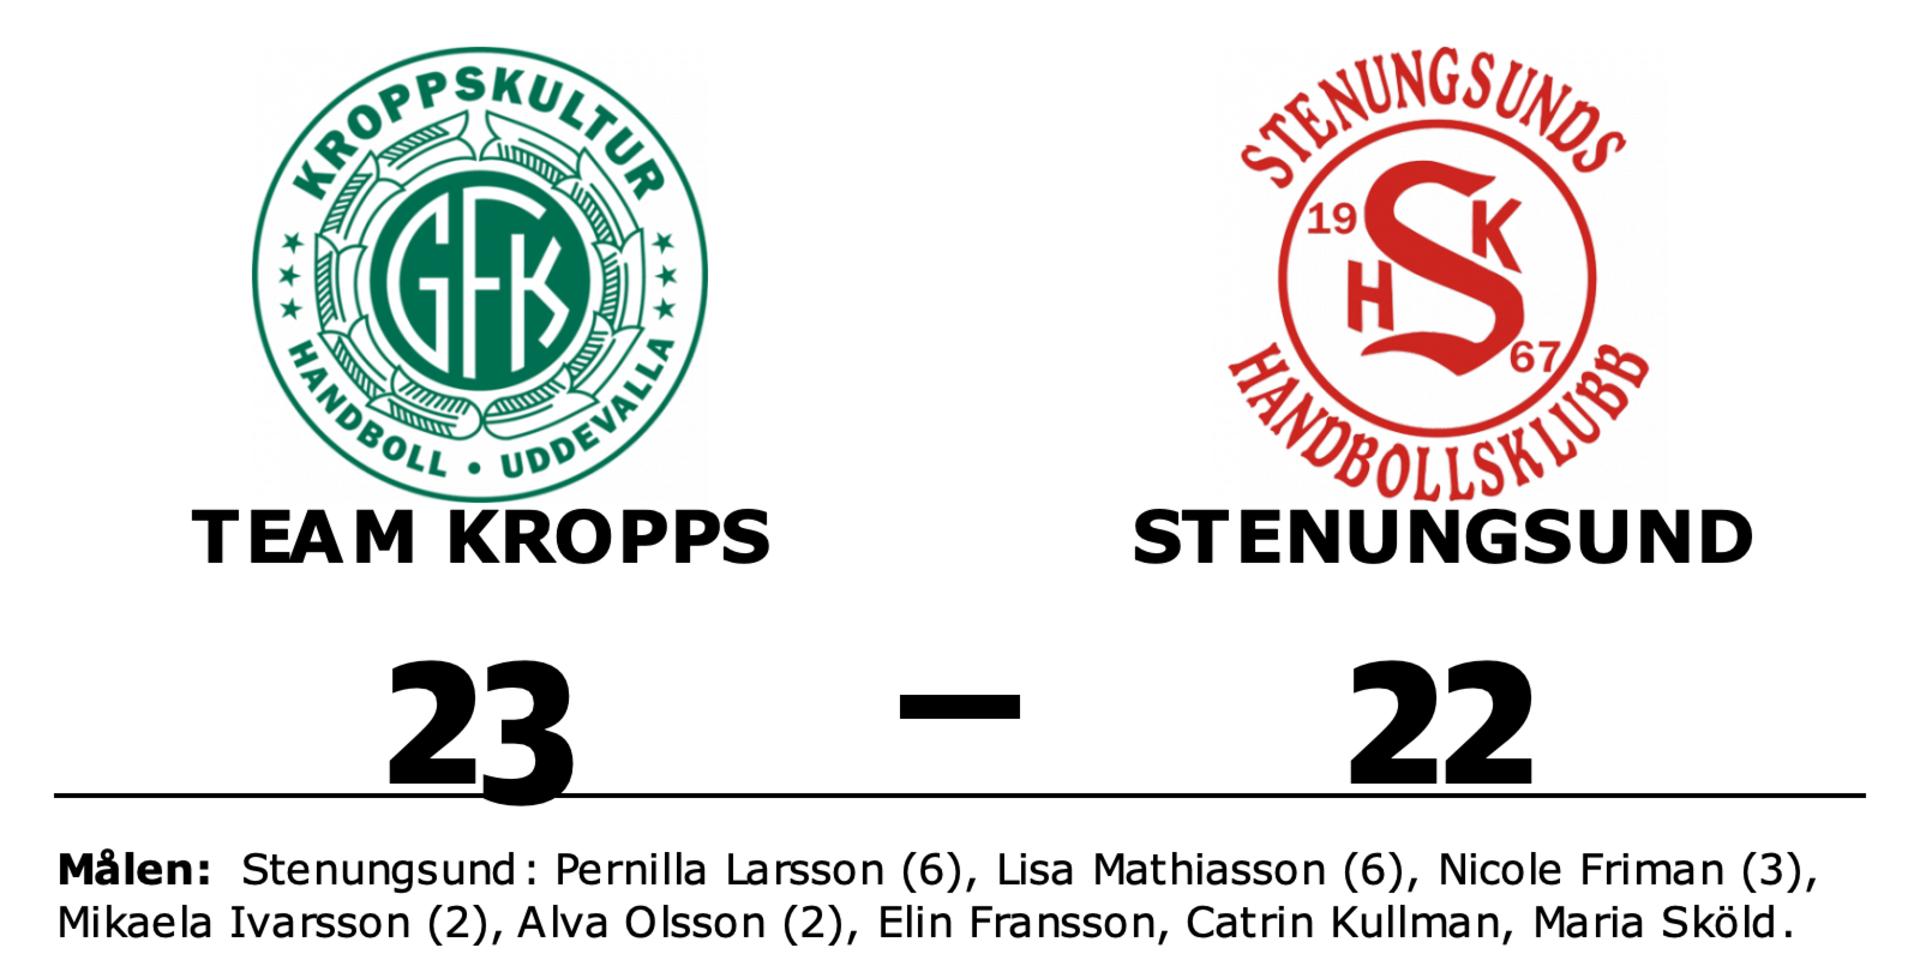 Team Kropps vann mot Stenungsund